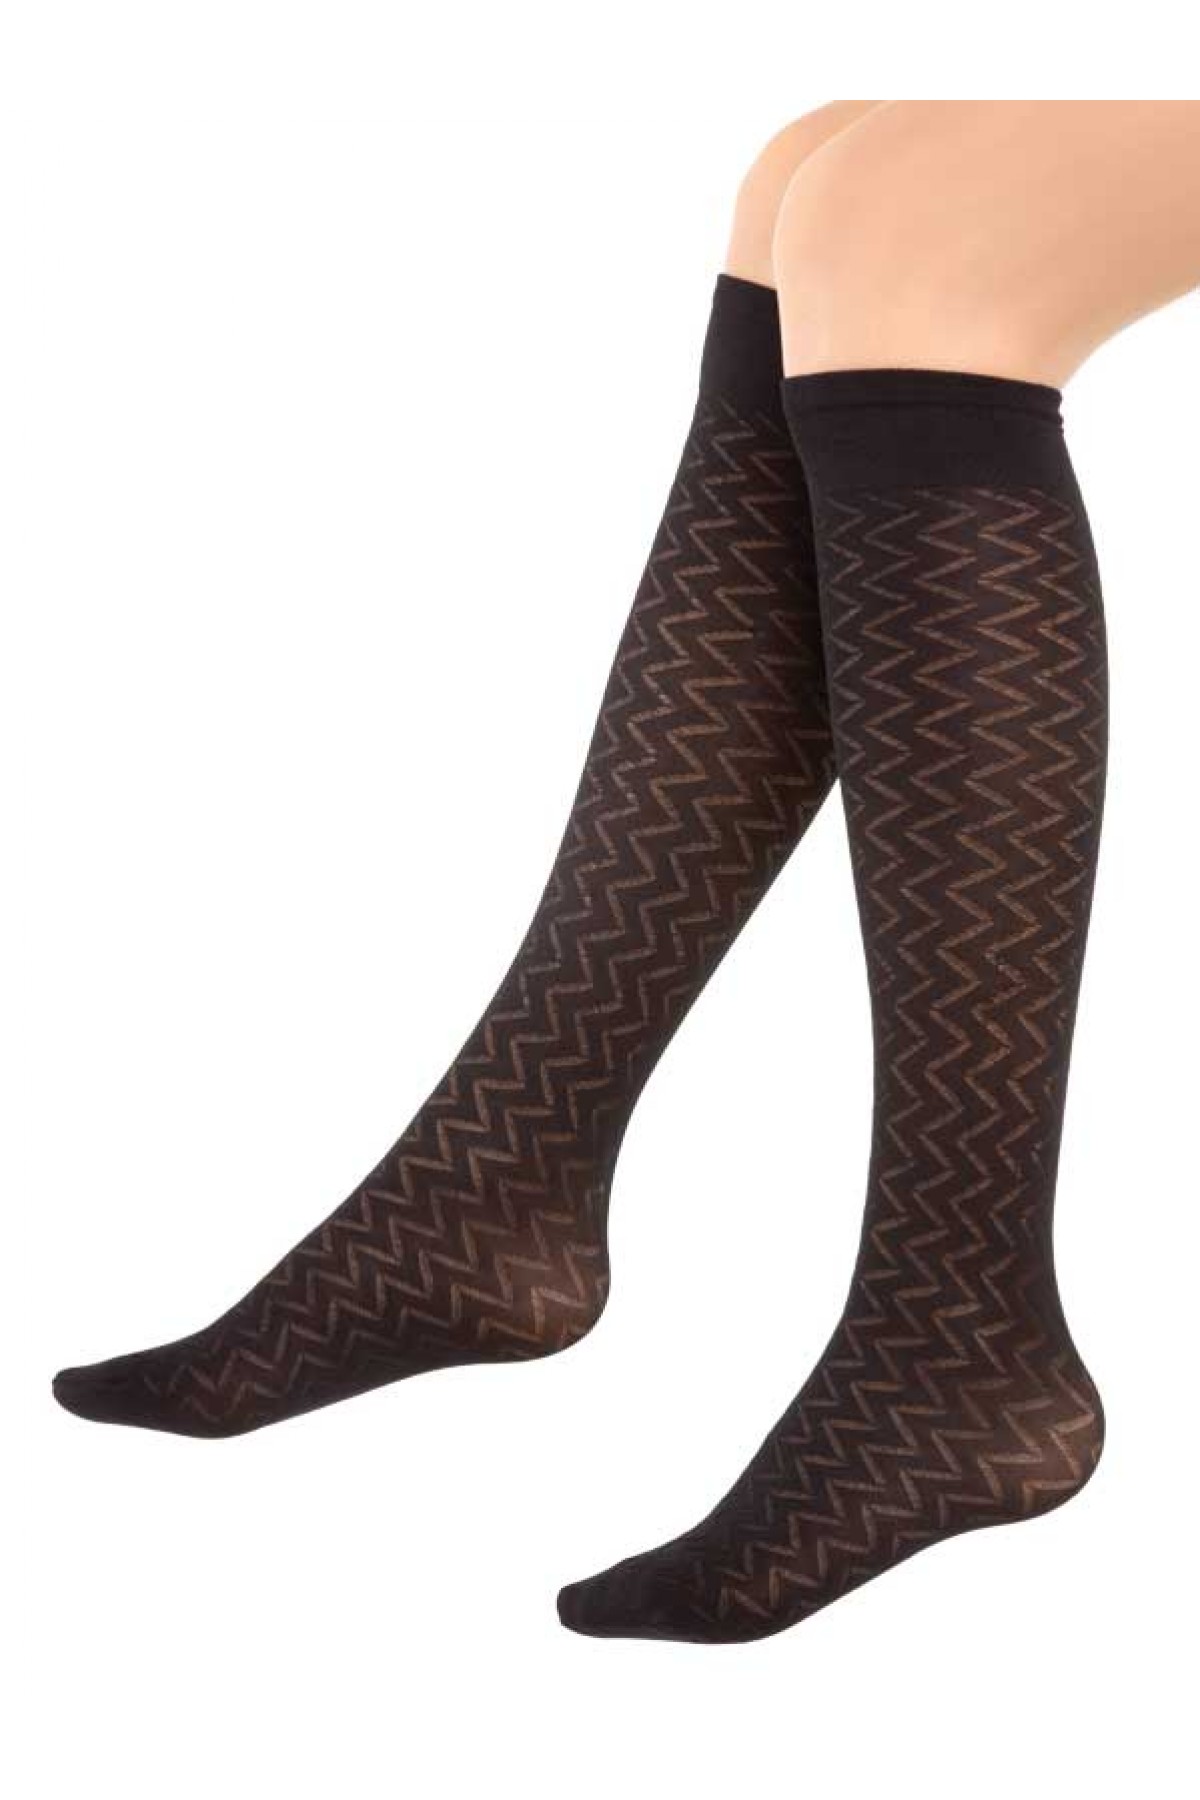 Mite Love Mikro Dizaltı Çorap Irmak Desen Siyah